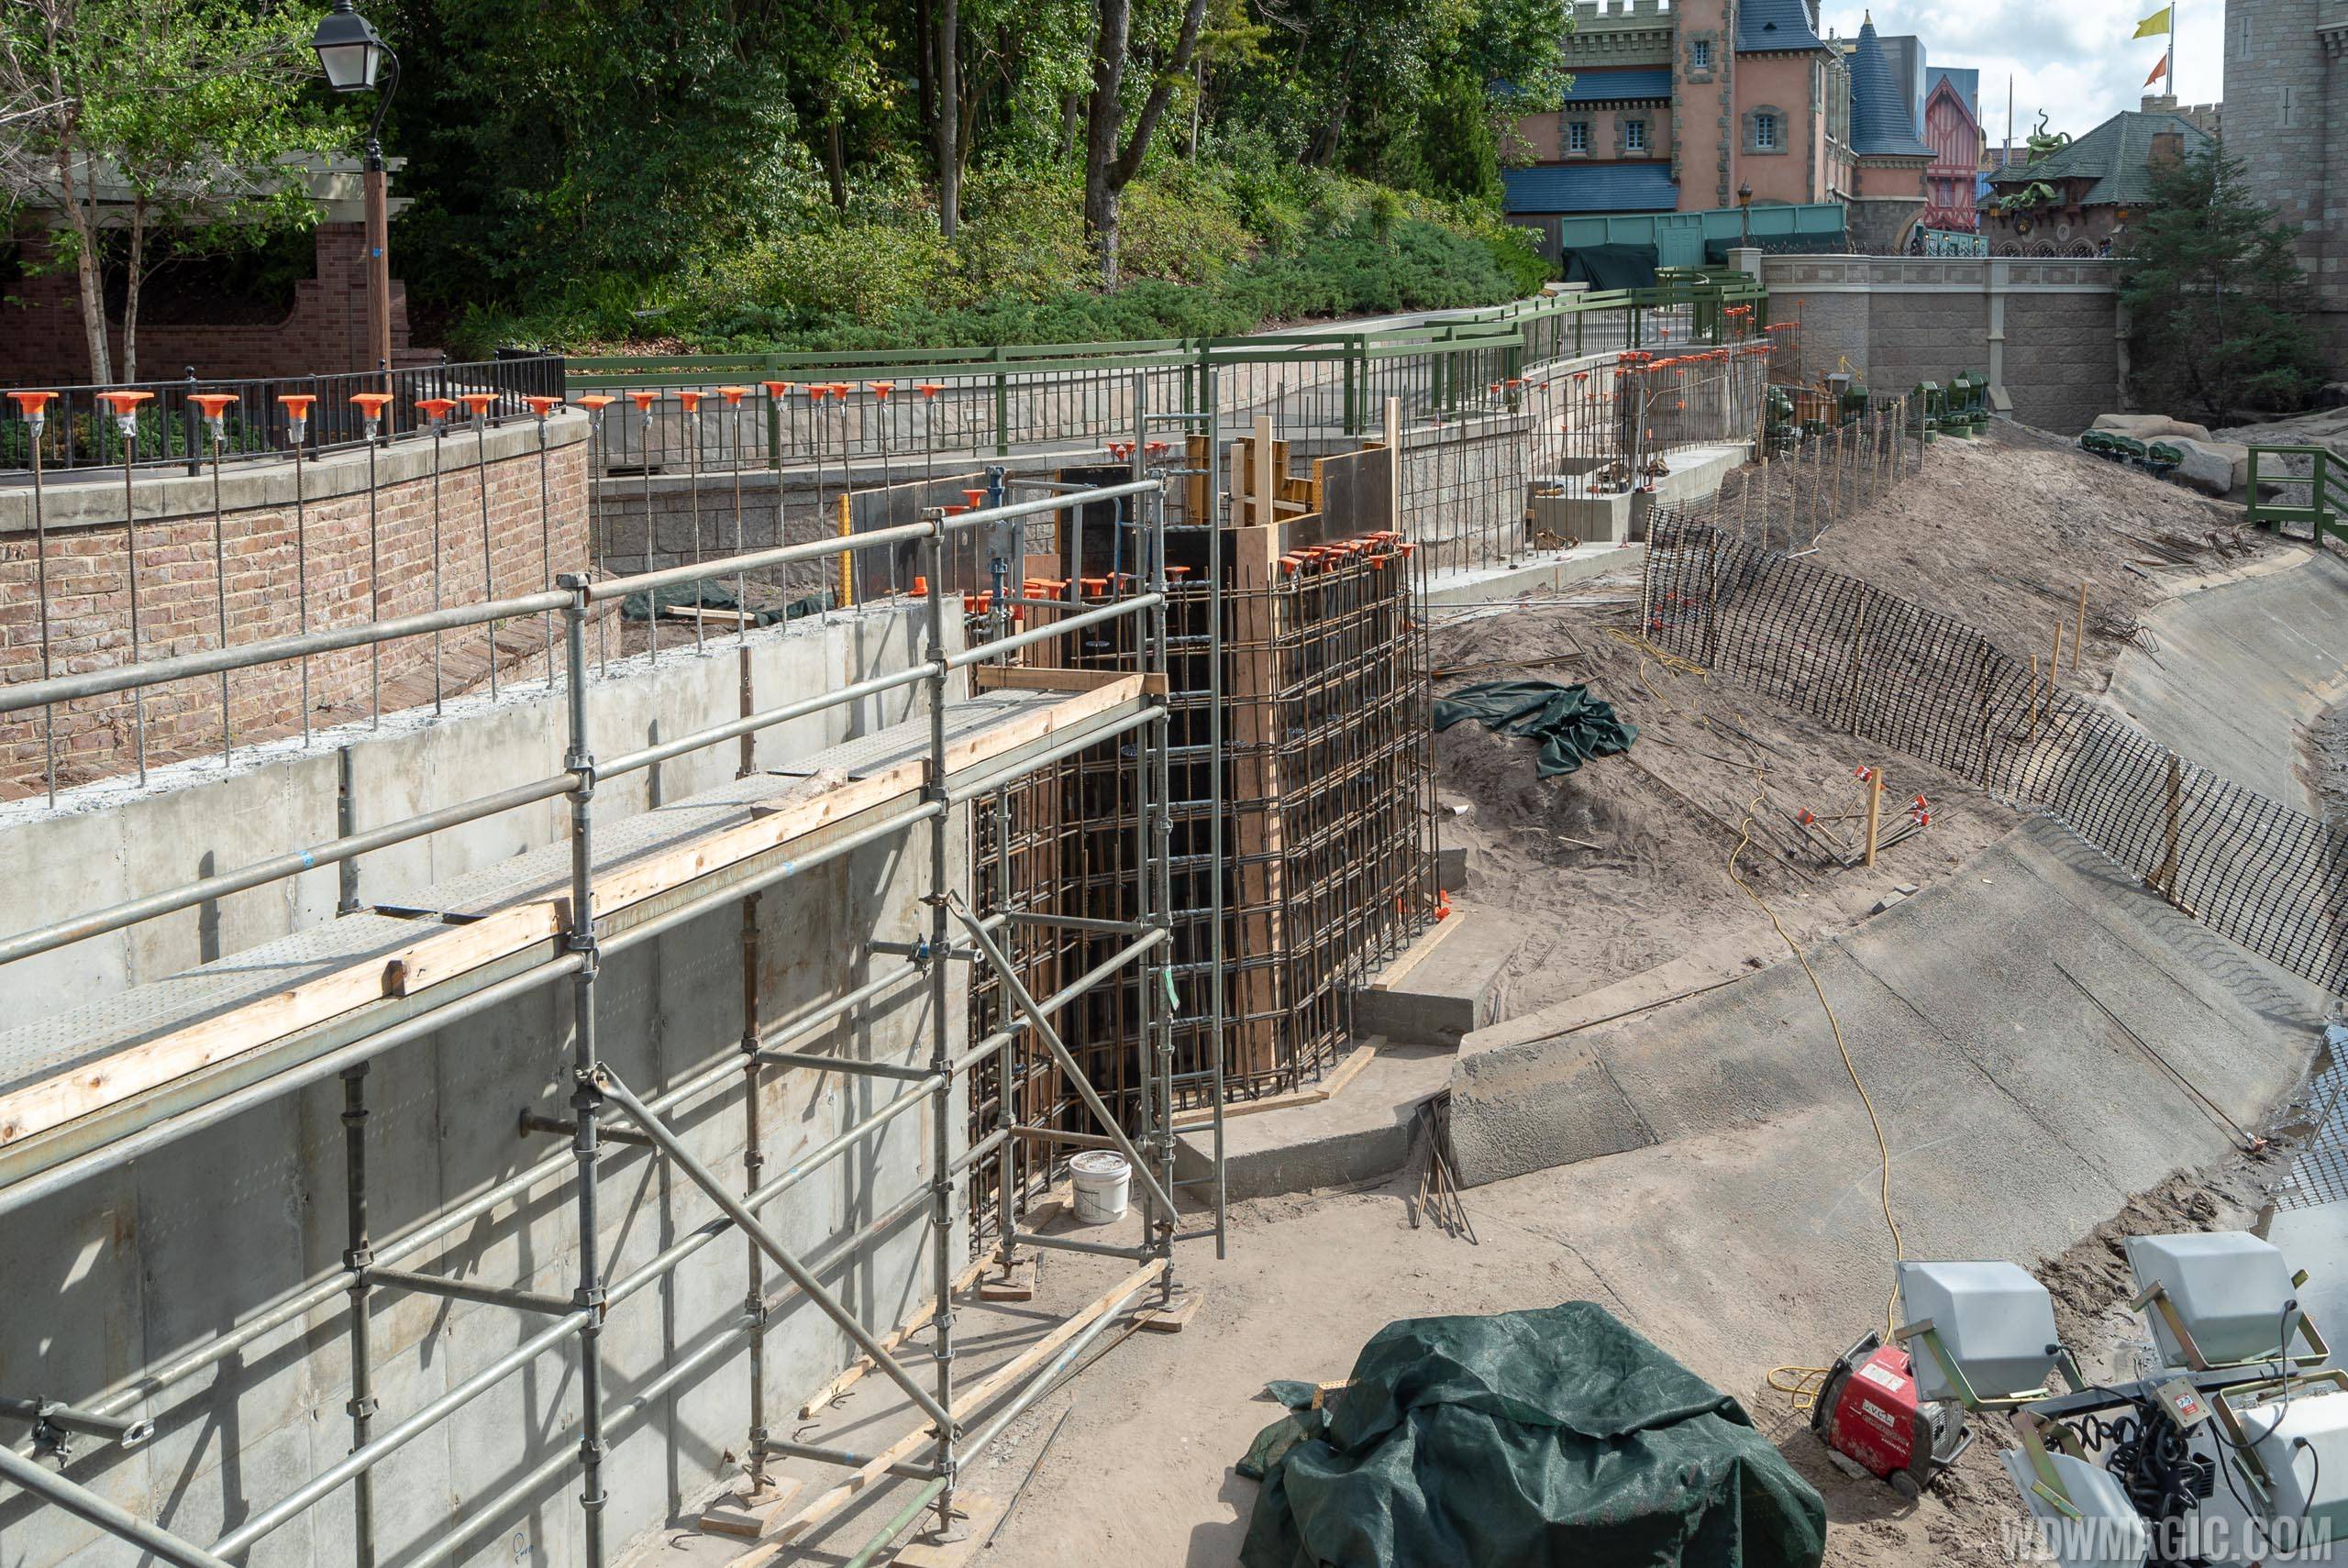 Liberty Square to Fantasyland walkway expansion construction - May 2019